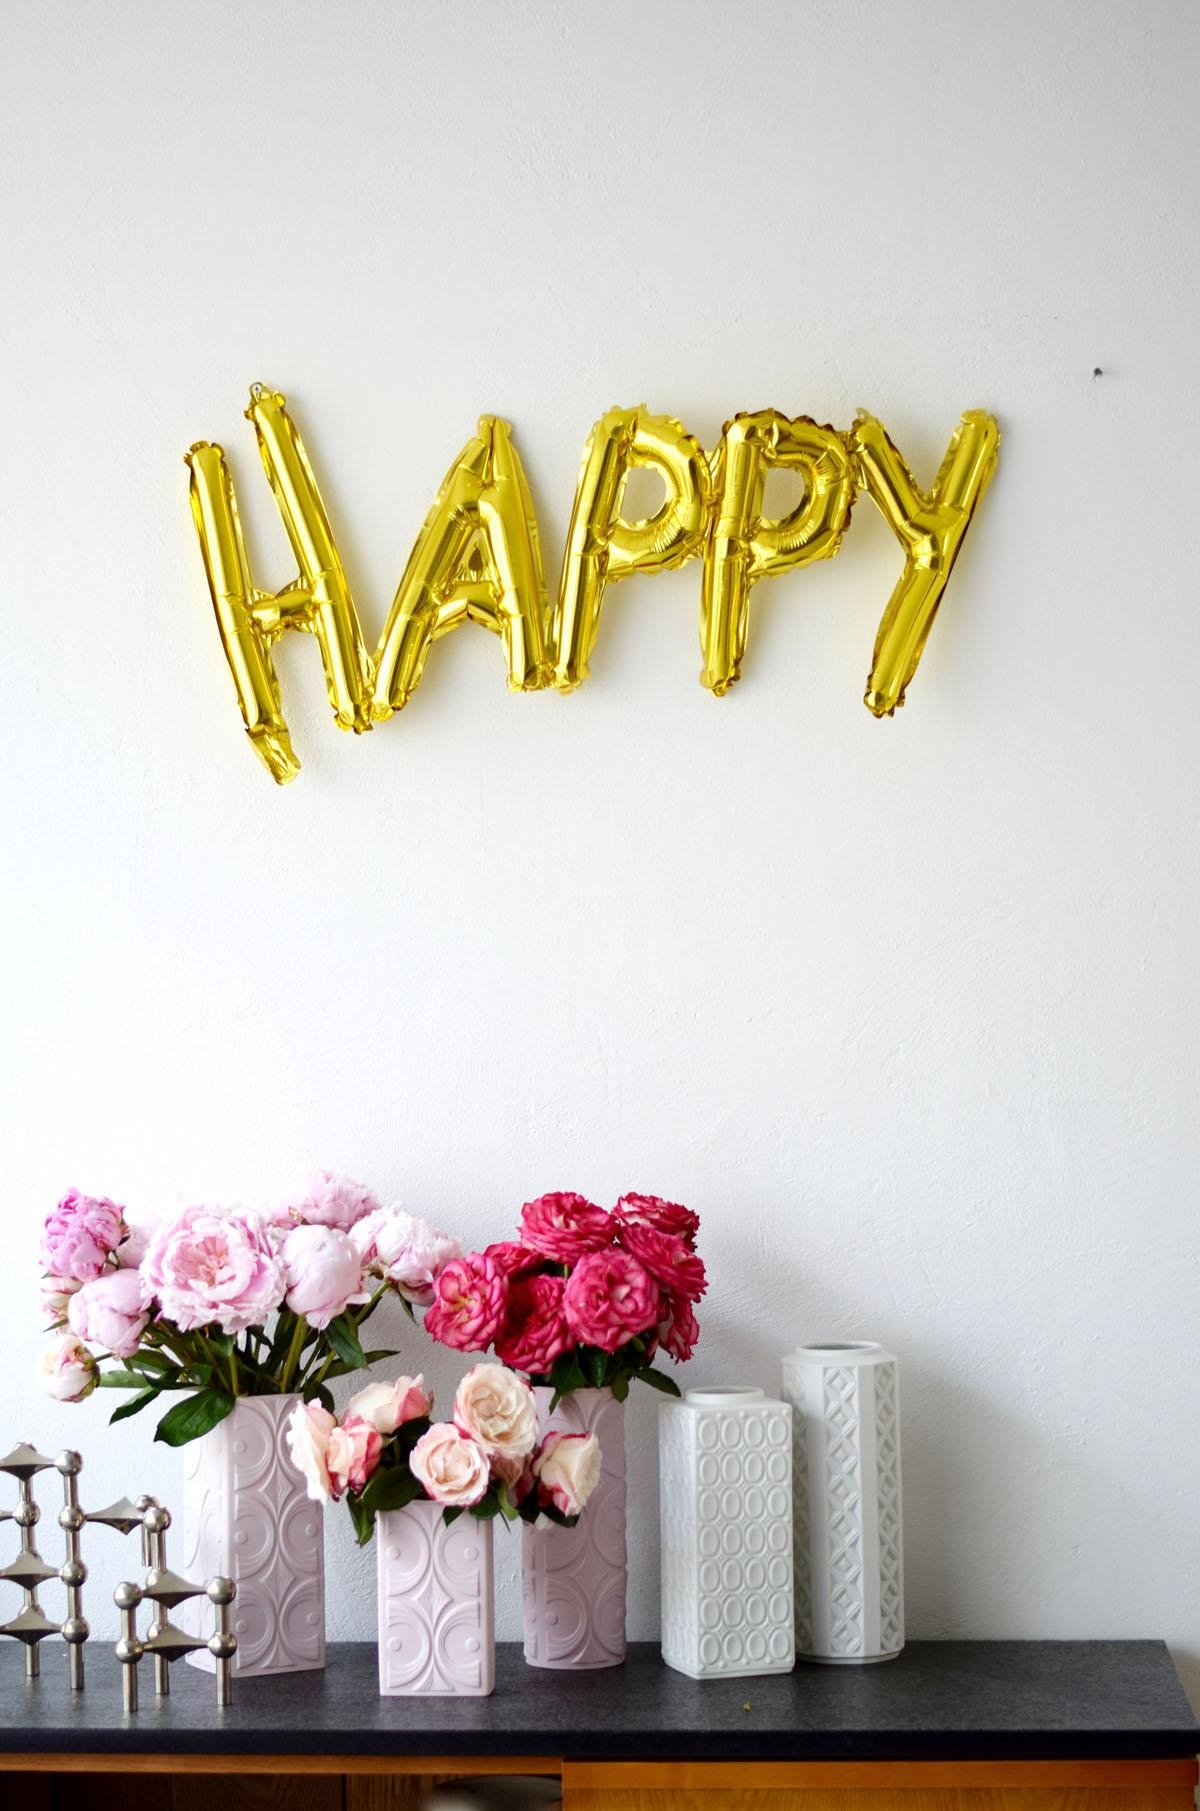 HAPPY!
#happyfriday #schonwiederpfingstrosen #blumenliebe #vintagevasen #midcentury